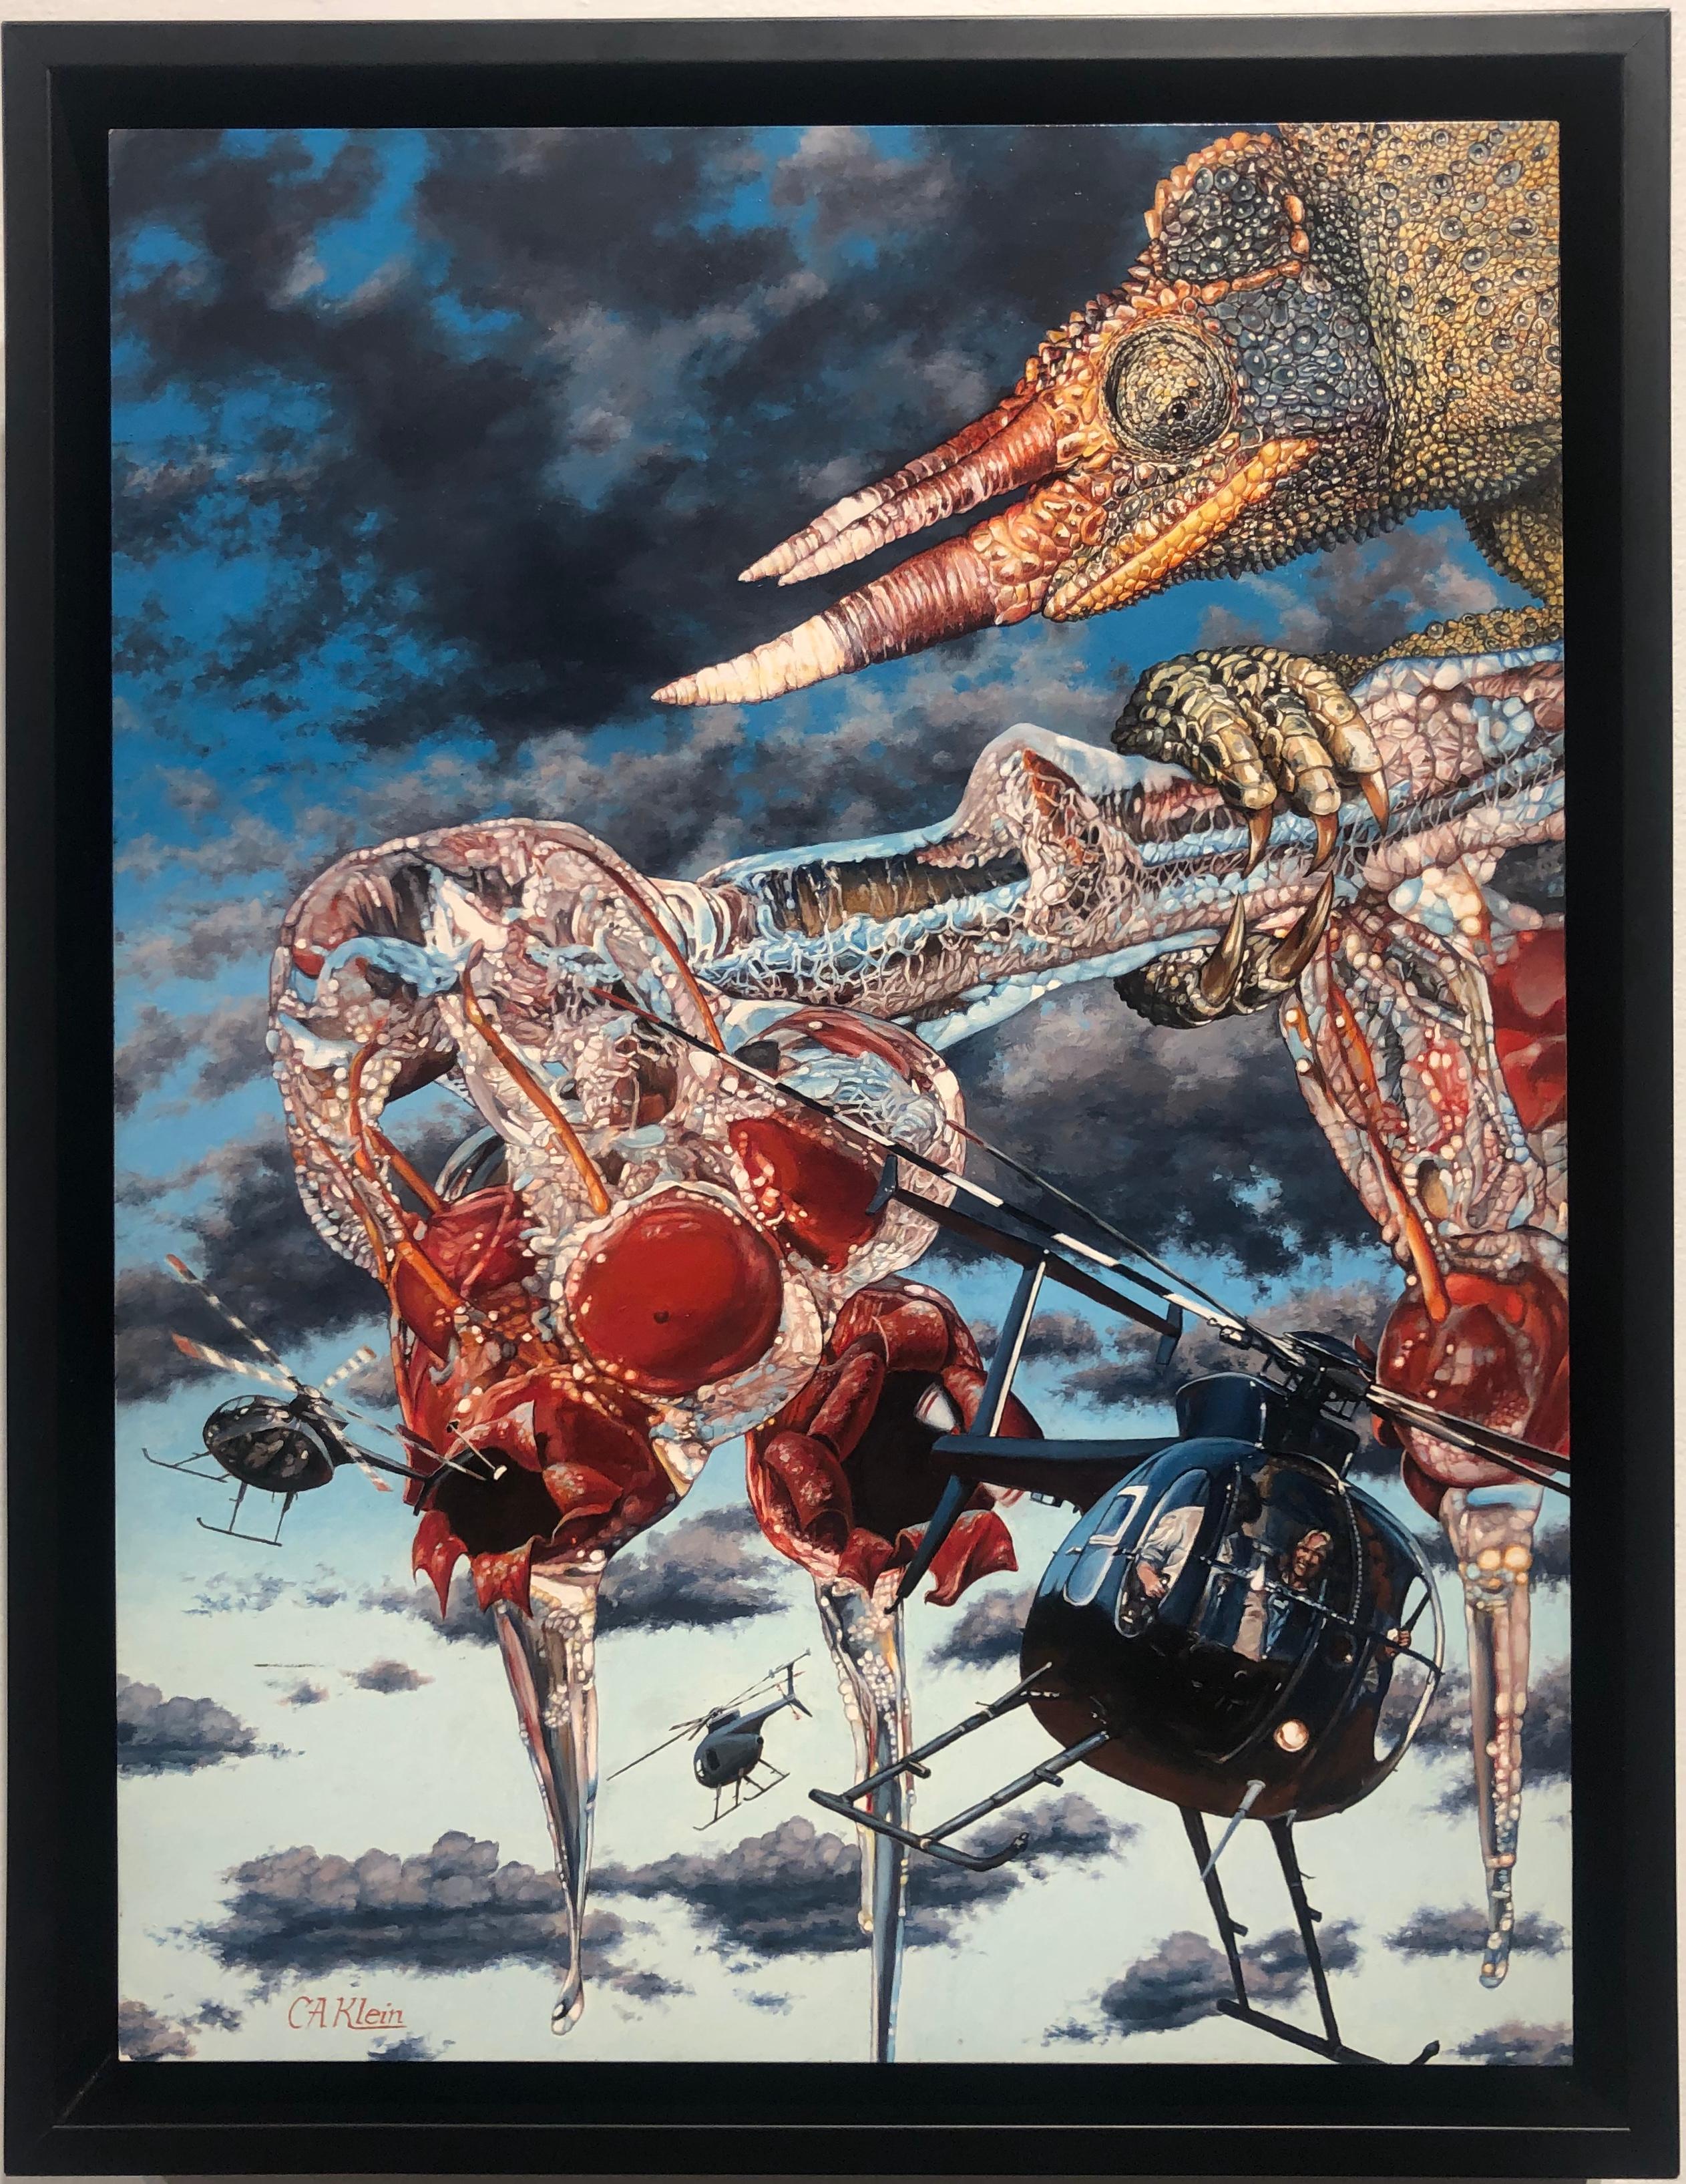 Heli Hutchlings, Surreales Ölgemälde - Riesige Chameleons Krabben Apfeln Hubschraubenflugzeug – Painting von Christopher Klein